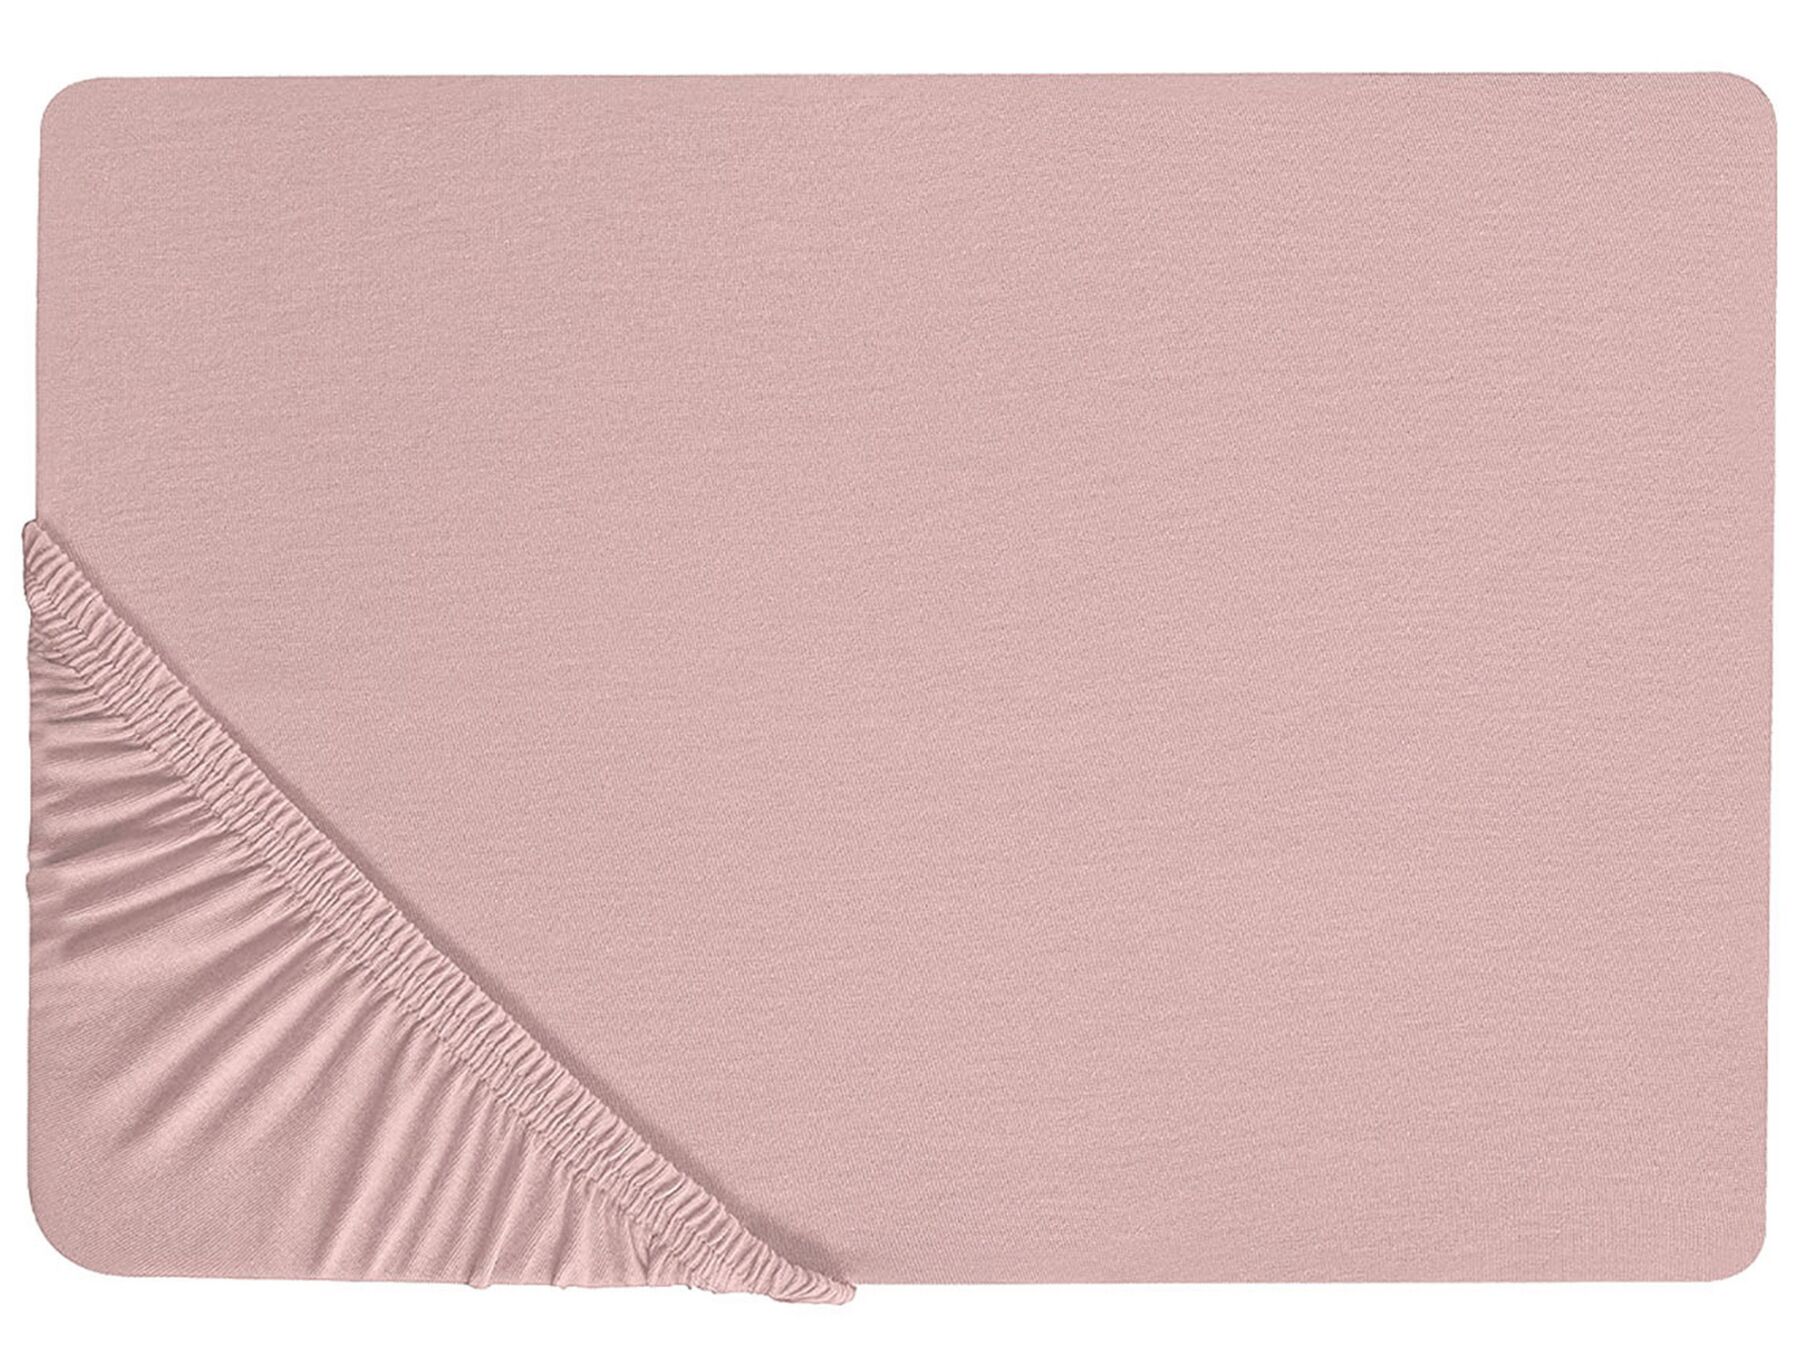 Rózsaszín pamut gumis lepedő 140 x 200 cm HOFUF_815905